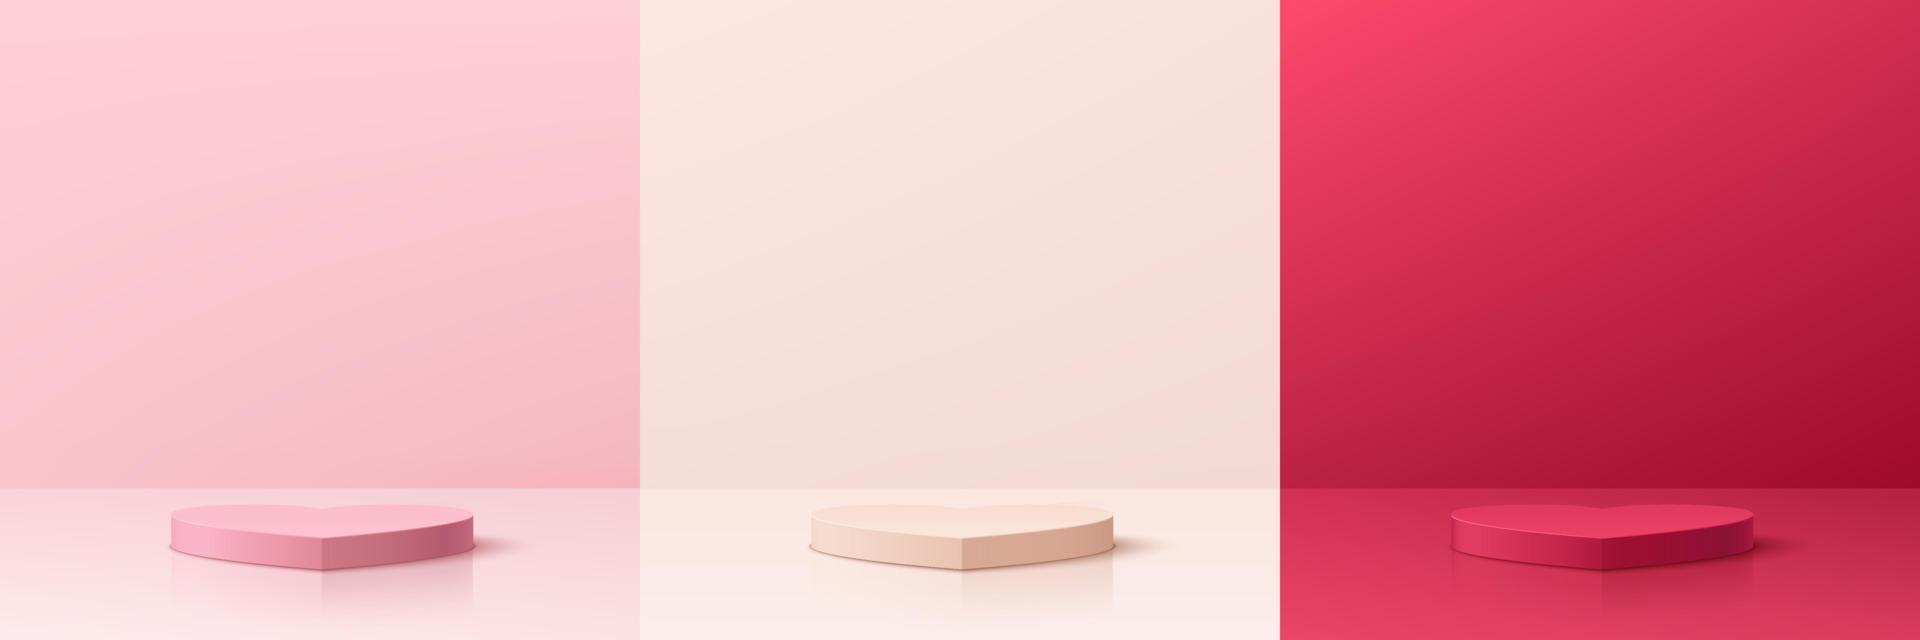 Set aus rosa, cremefarbenem und rotem 3D-abstraktem Raum mit Podest-Podium in Herzform. pastellfarbene szene für die präsentation von produktdisplays zum valentinstag. Vektor-Rendering geometrische Plattform. Bühne für Schaufenster. vektor